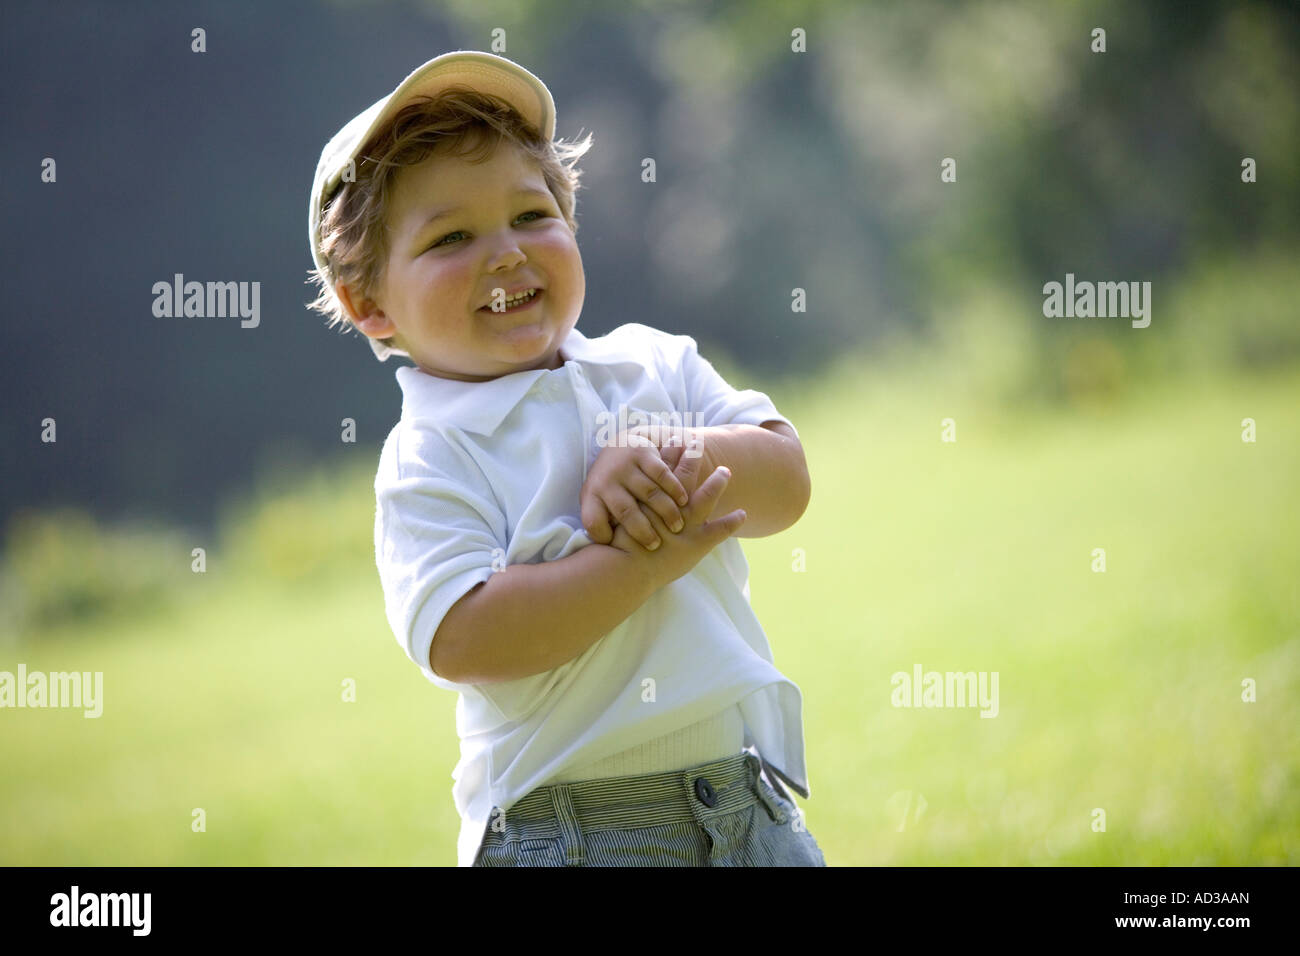 Porträt eines kleinen Jungen mit einer Kappe Stockfoto